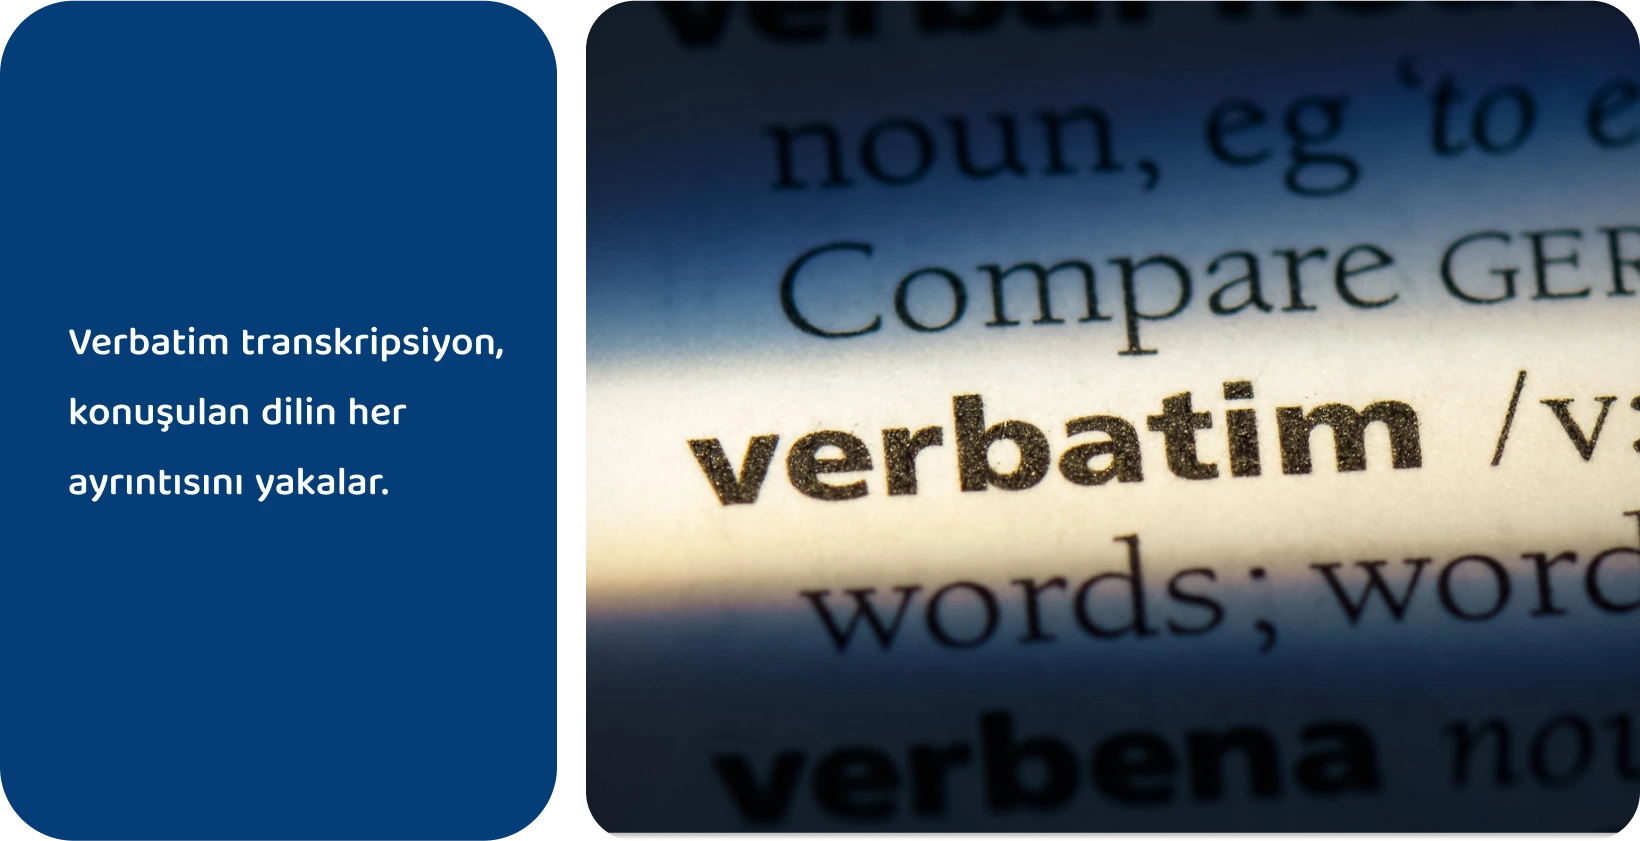 'Verbatim' kelimesinin sözlük girişi vurgulanarak kesin transkripsiyon yöntemlerini temsil eder.